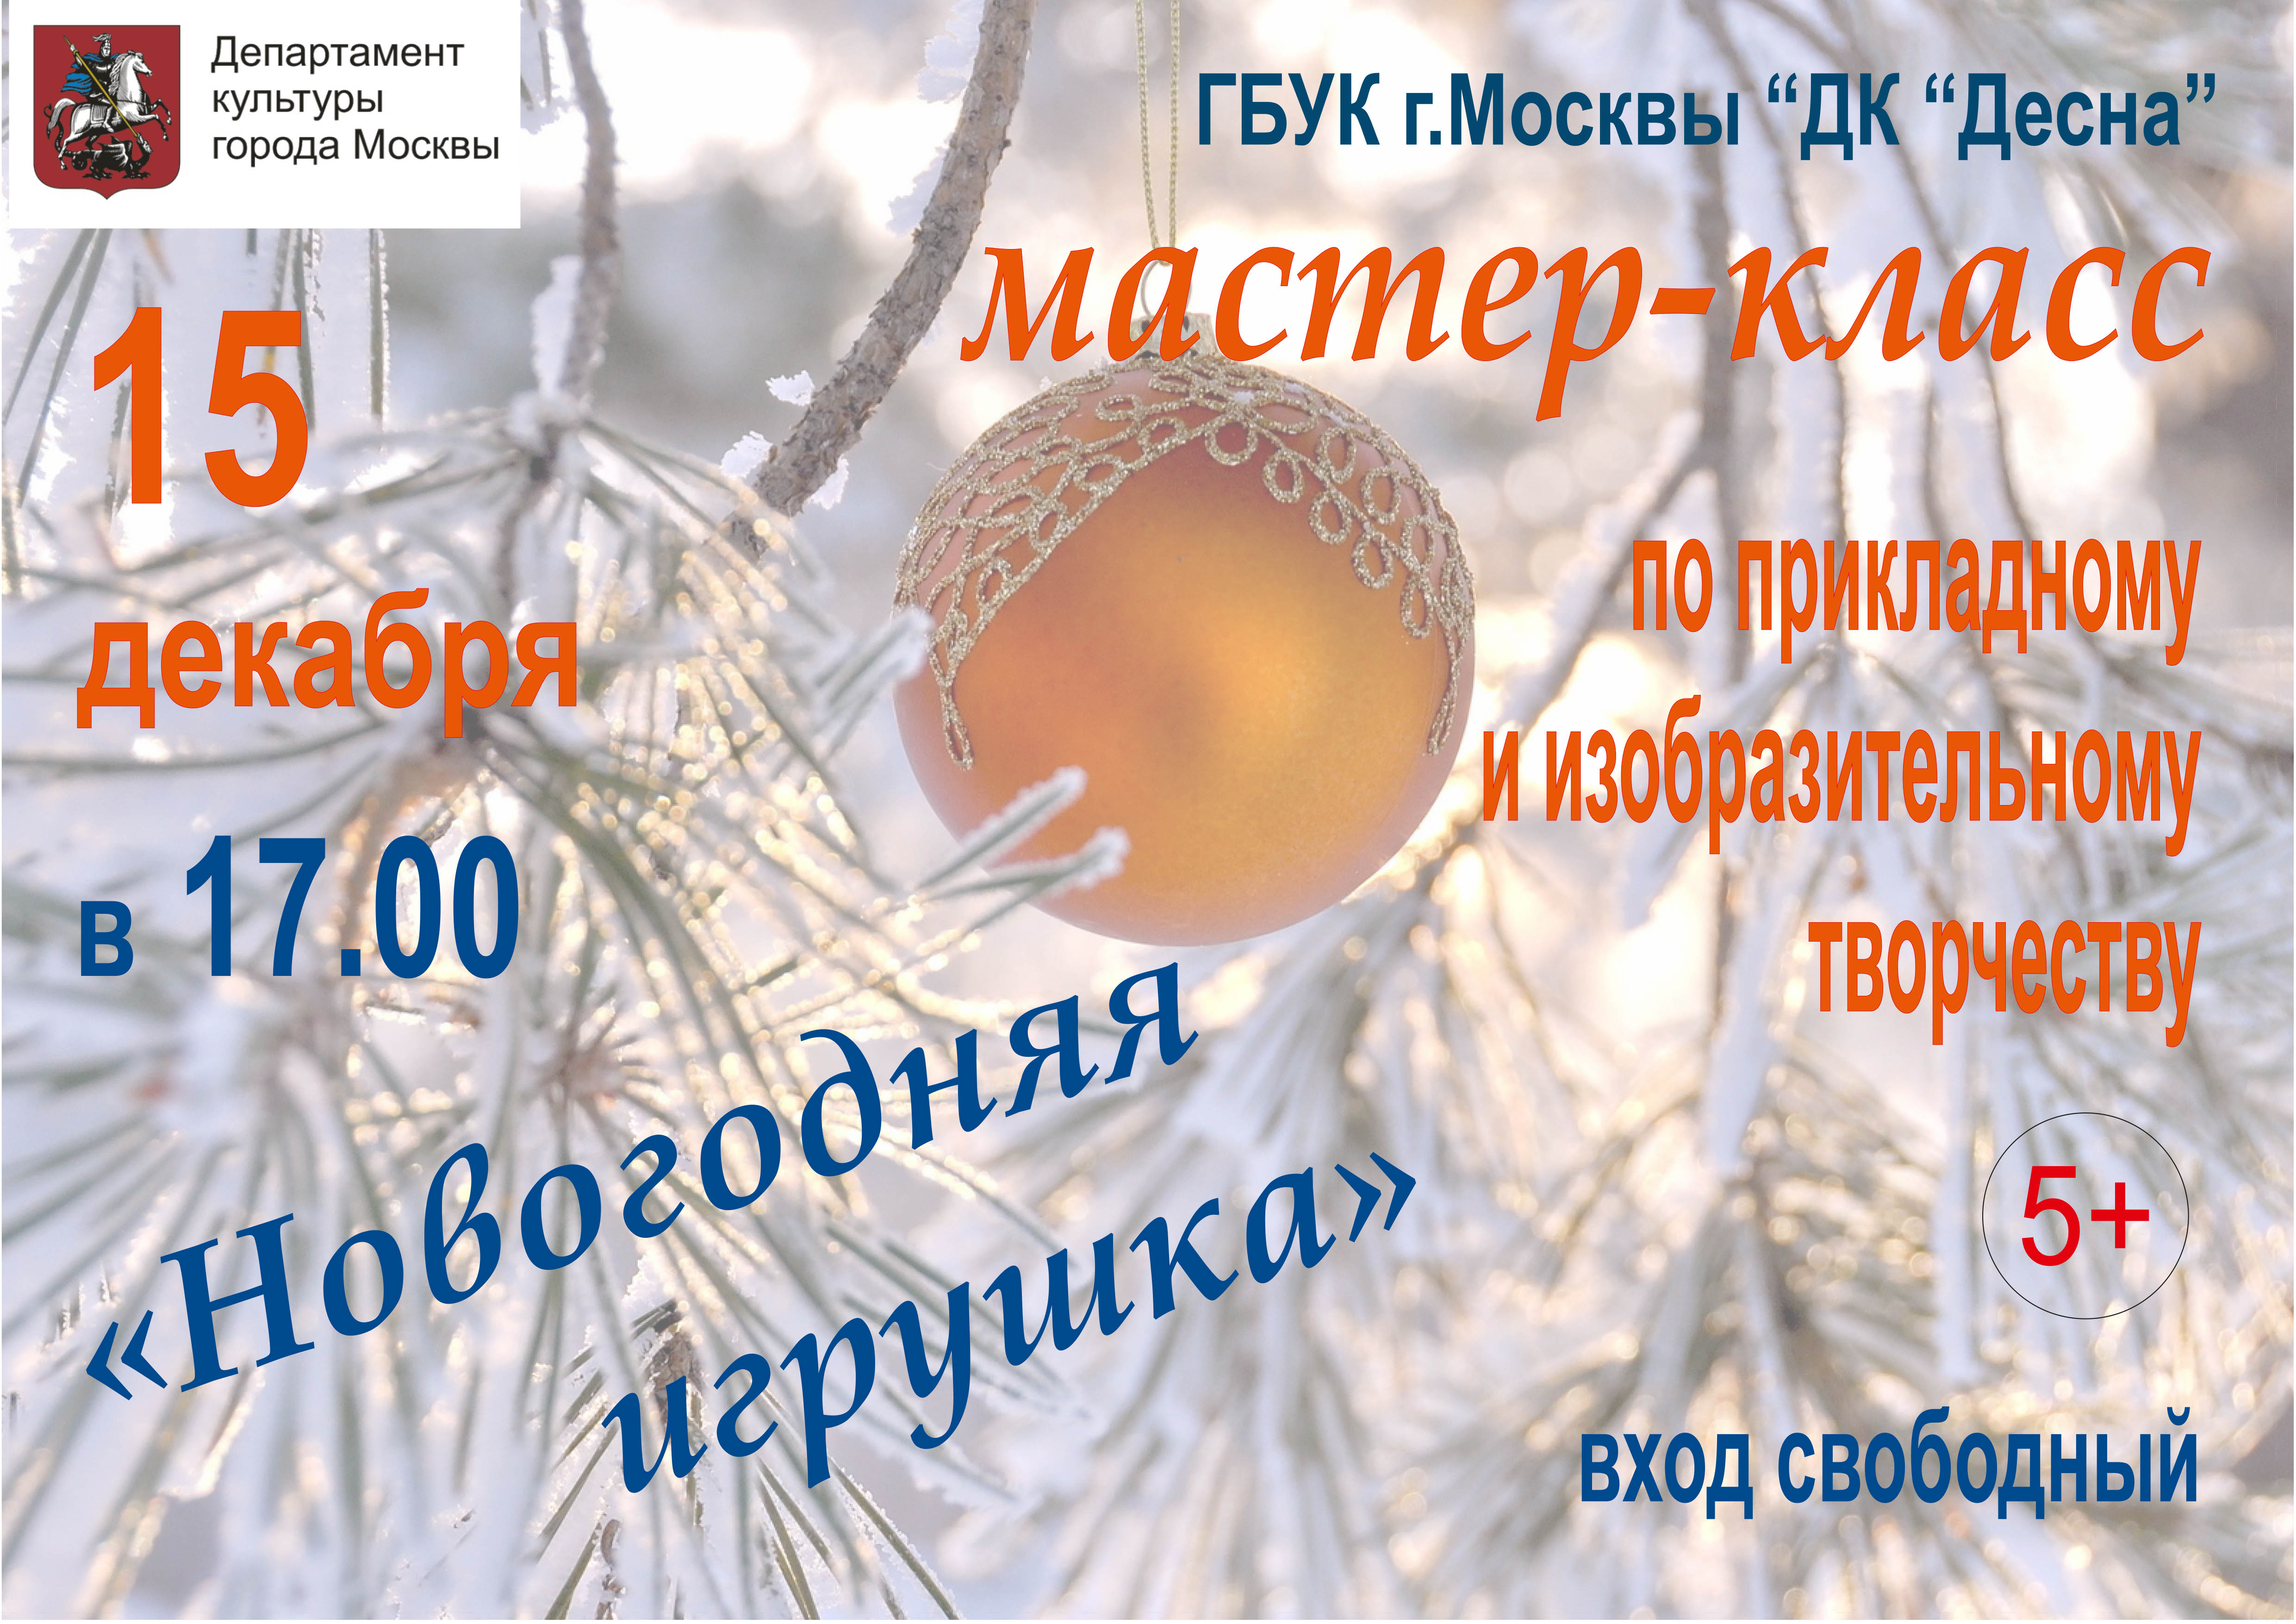 15 декабря в 17:00 ГБУК г. Москвы "ДК "Десна" приглашает всех на мастер-класс по прикладному и изобразительному творчеству "Новогодняя игрушка" для детей и взрослых